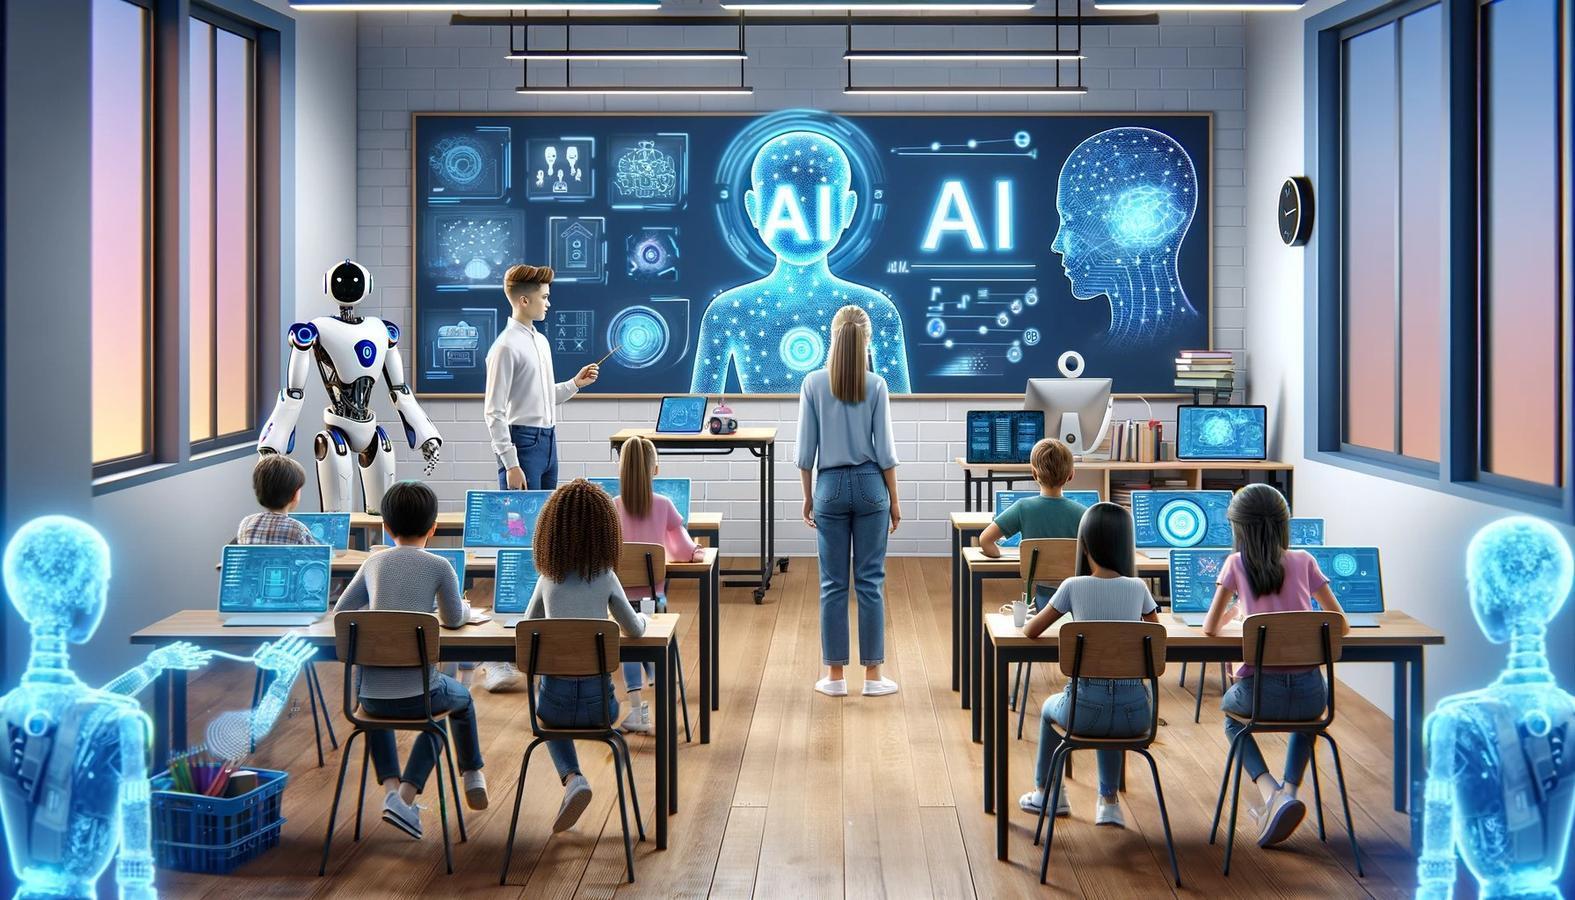 A futuristic classroom with advanced AI Technology (Image: generated by DALL·E AI)